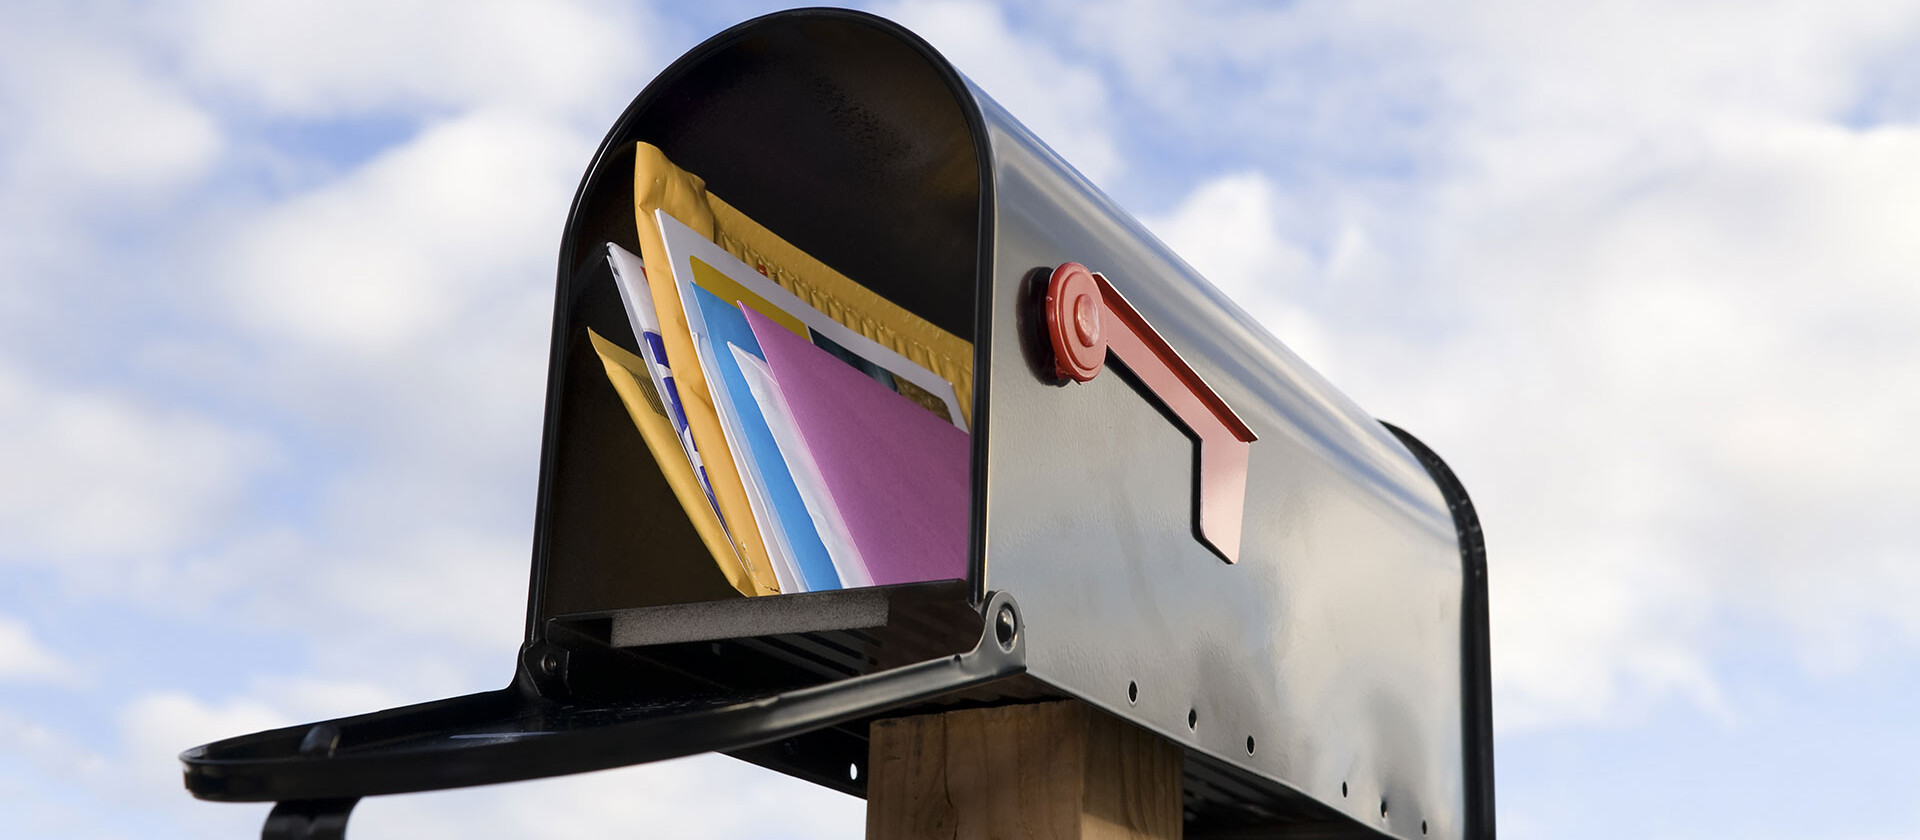 Briefkasten mit Post